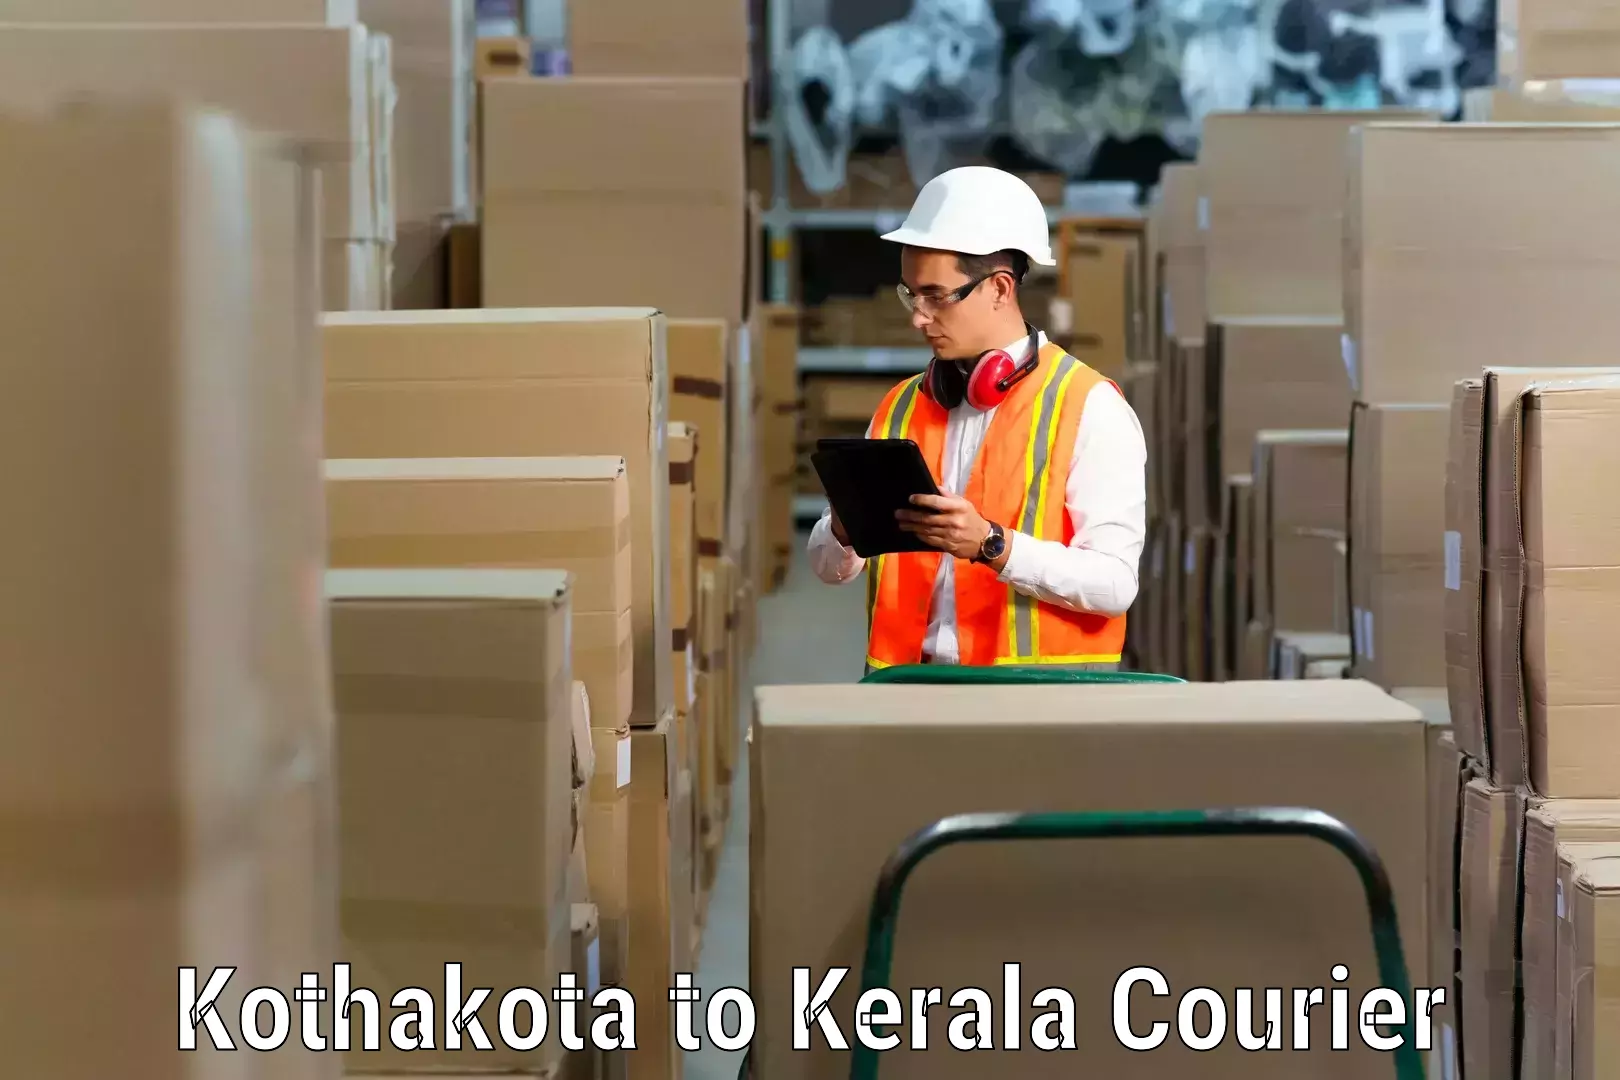 Moving and handling services Kothakota to Mundakayam